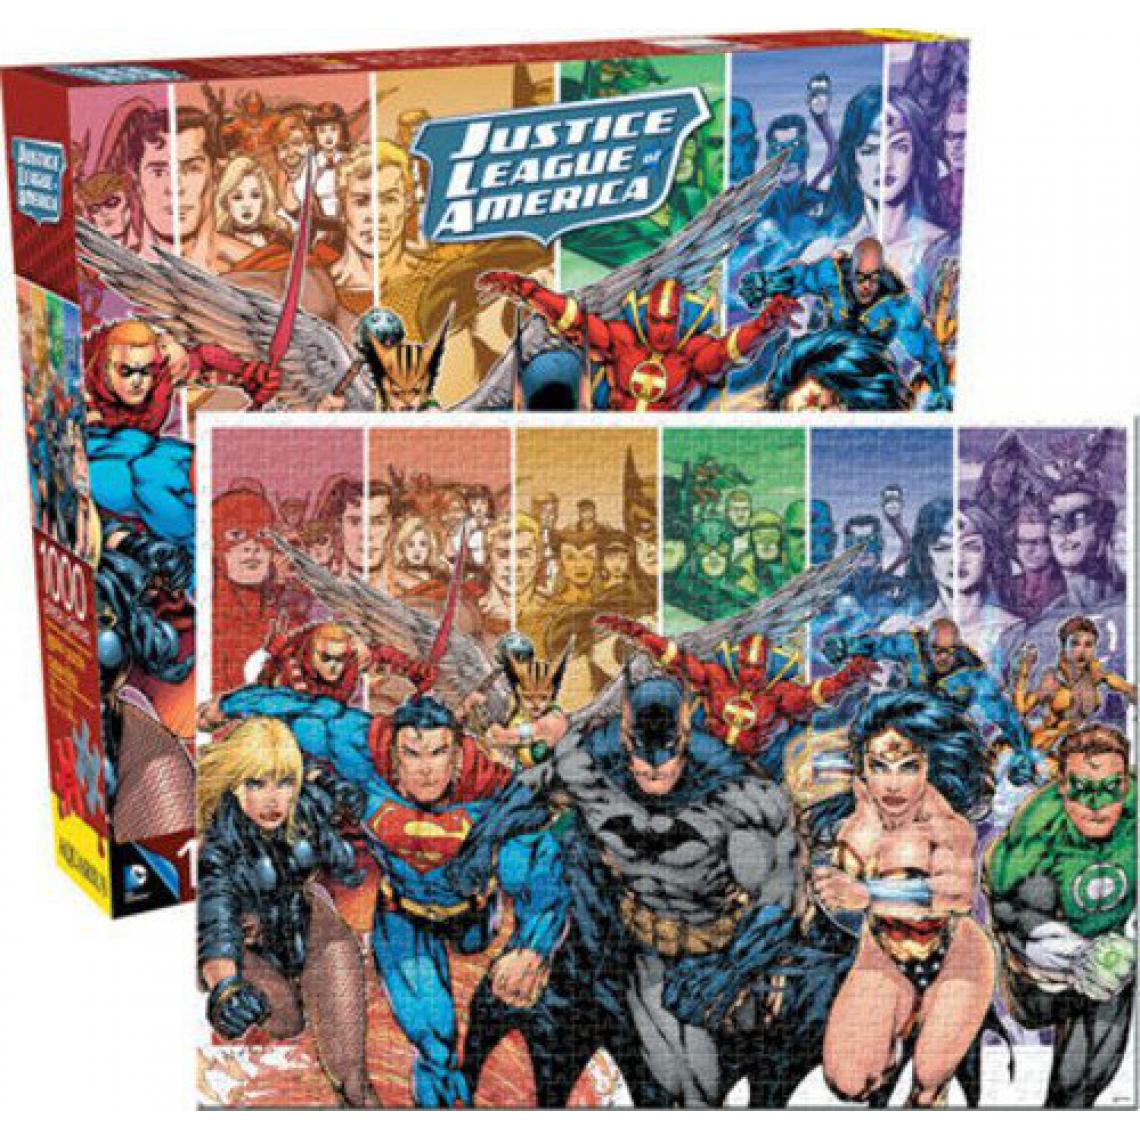 Aquarius - Aquarius Dc comics Justice League of America 1000 Piece Jigsaw Puzzle - Accessoires Puzzles